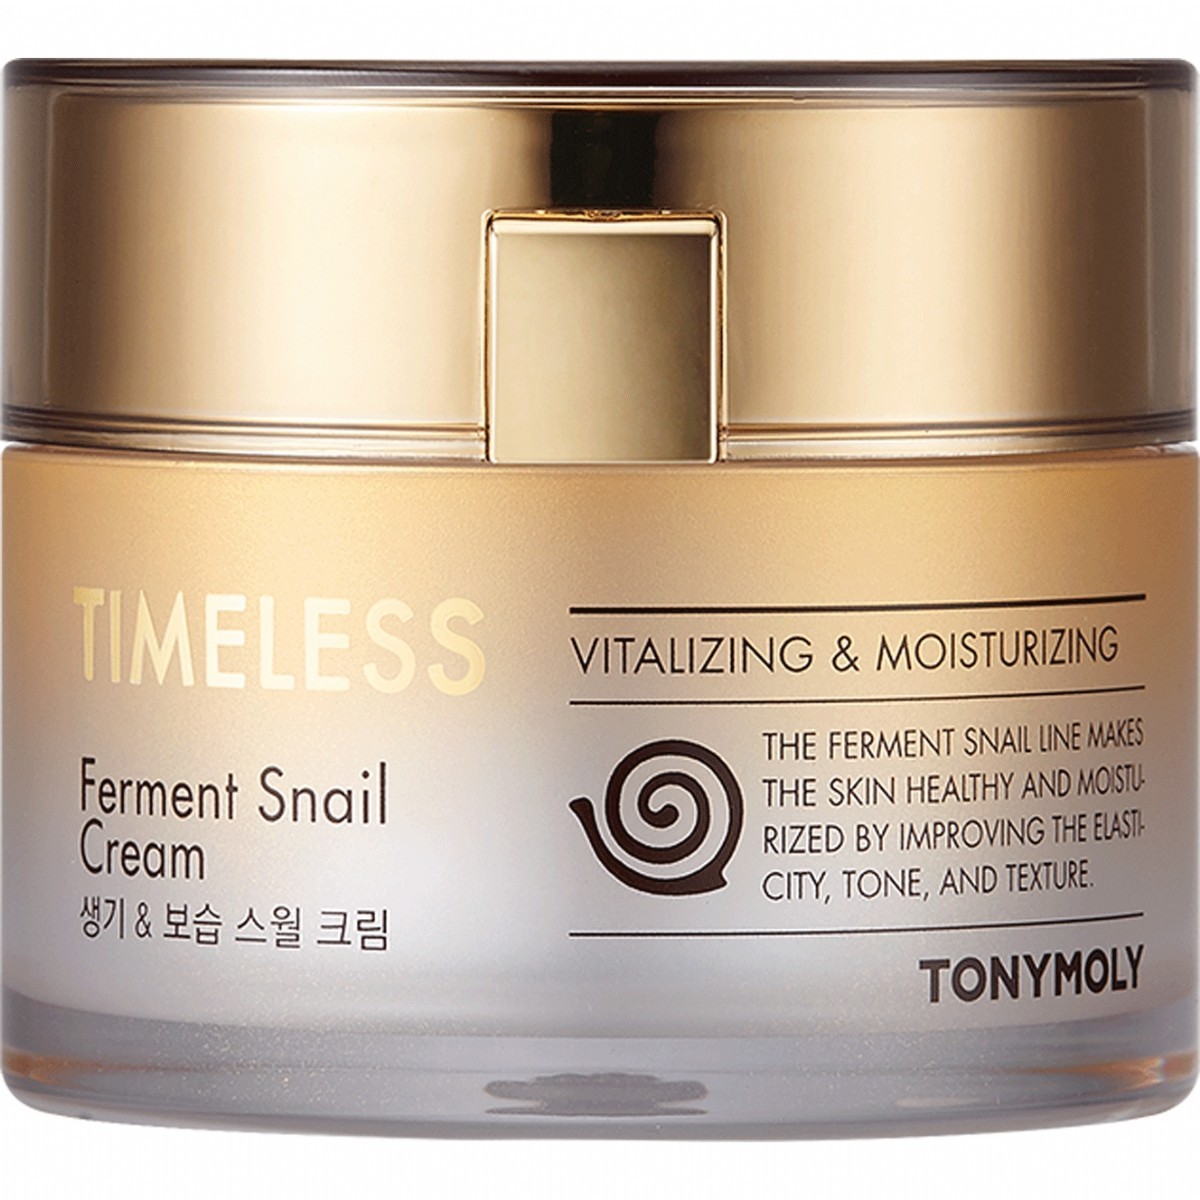 Krem | Tonymoly Timeless Ferment Snail Cream - Salyangoz Özlü Anti-Aging Krem (Set) | YPD-TM00103 | Salyangoz Özlü Anti-Aging Krem | 